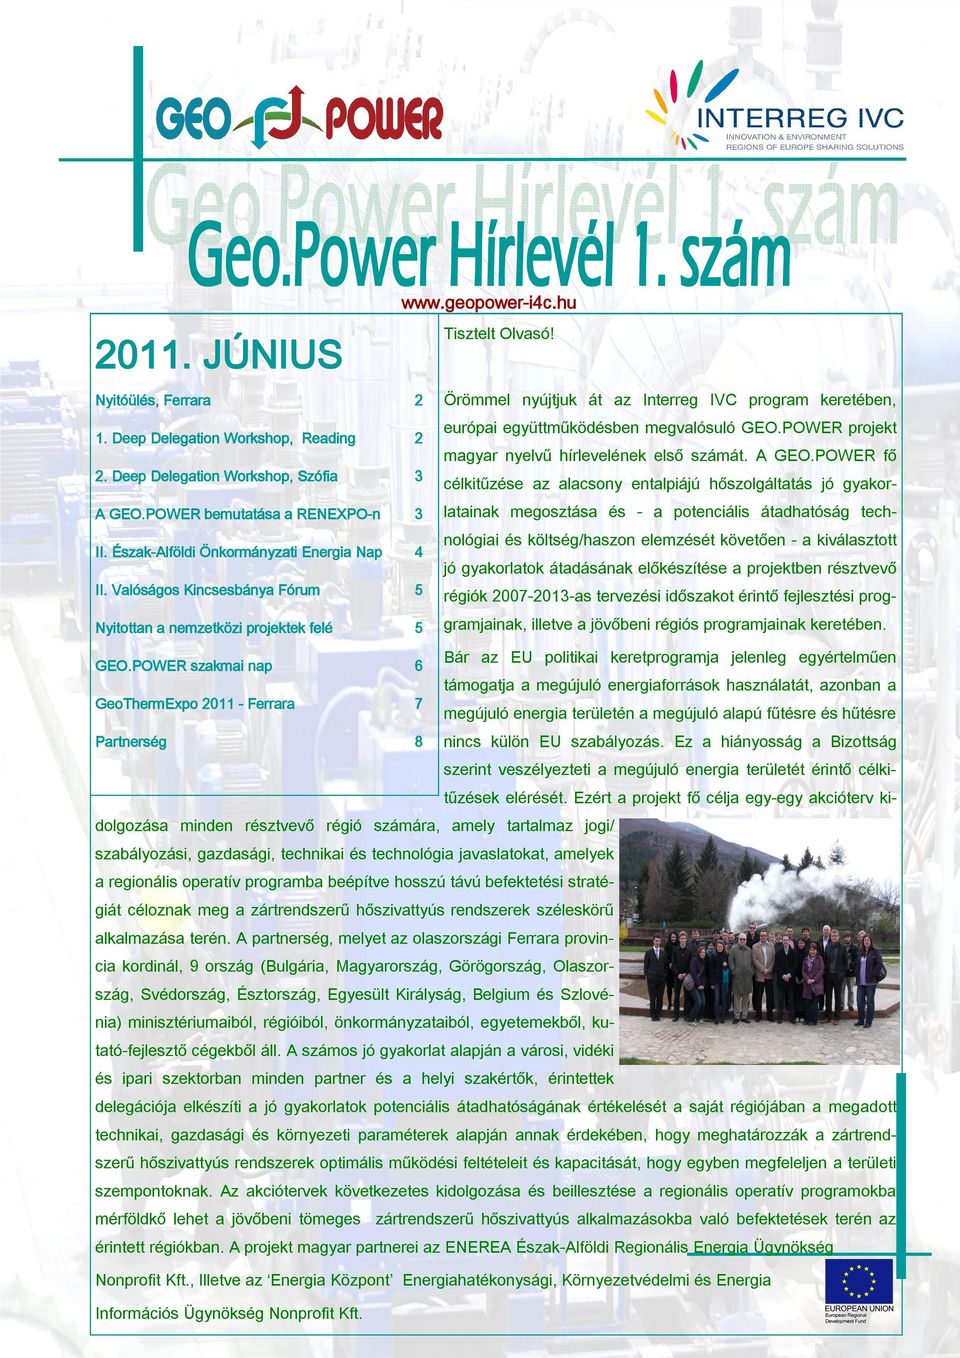 Észak-Alföldi Önkormányzati Energia Nap 4 európai együttműködésben megvalósuló GEO.POWER projekt magyar nyelvű hírlevelének első számát. A GEO.